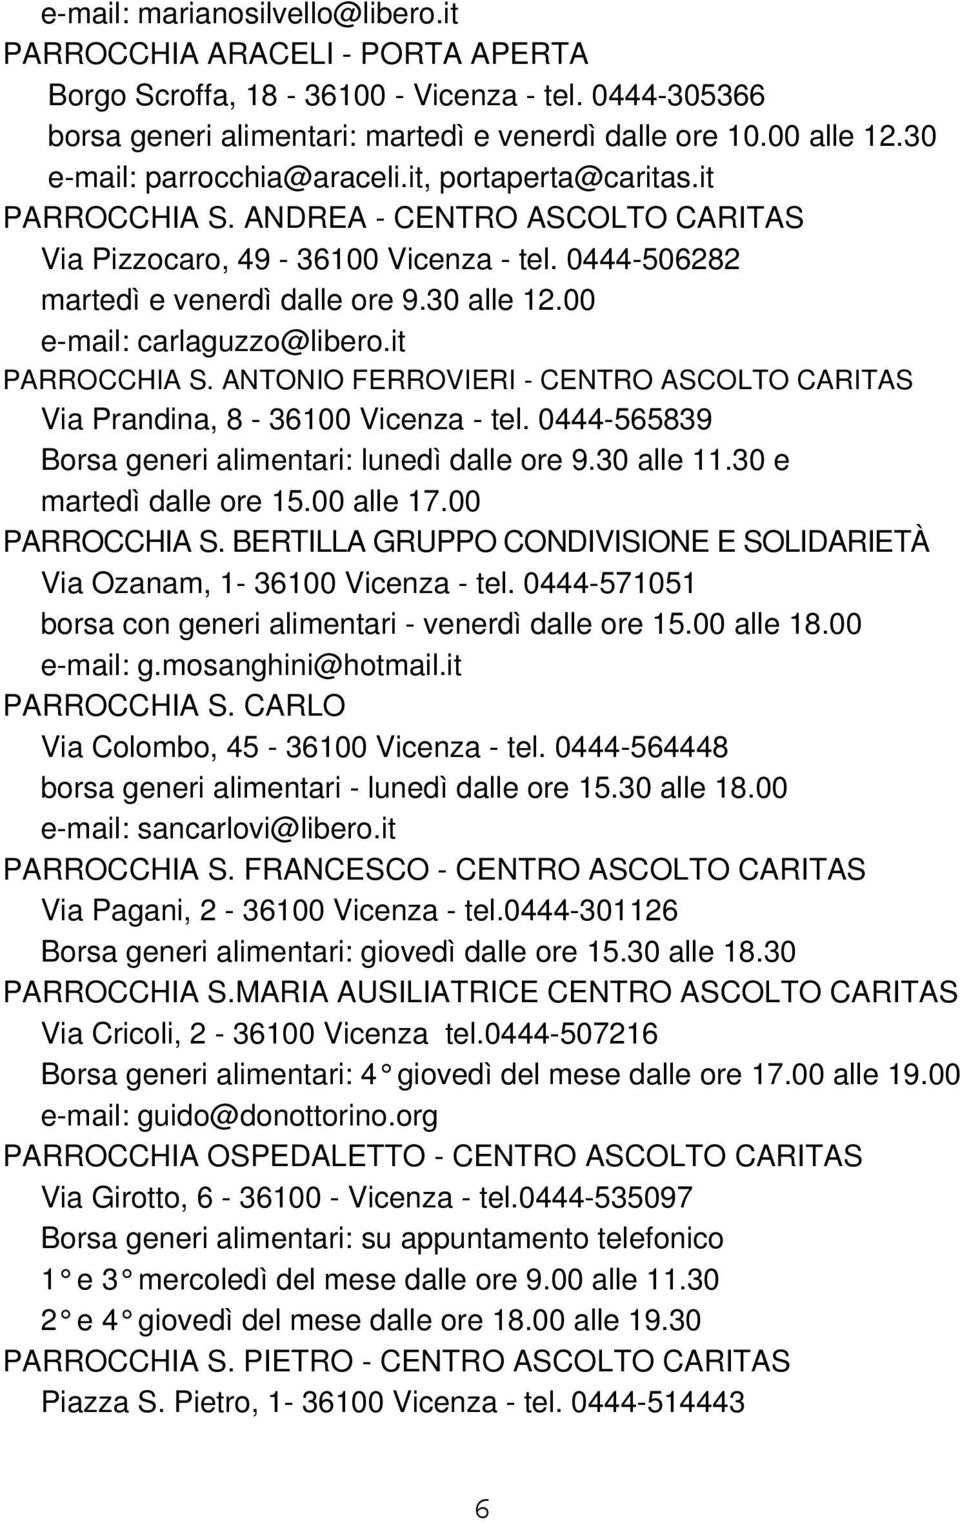 00 e-mail: carlaguzzo@libero.it PARROCCHIA S. ANTONIO FERROVIERI - CENTRO ASCOLTO CARITAS Via Prandina, 8-36100 Vicenza - tel. 0444-565839 Borsa generi alimentari: lunedì dalle ore 9.30 alle 11.